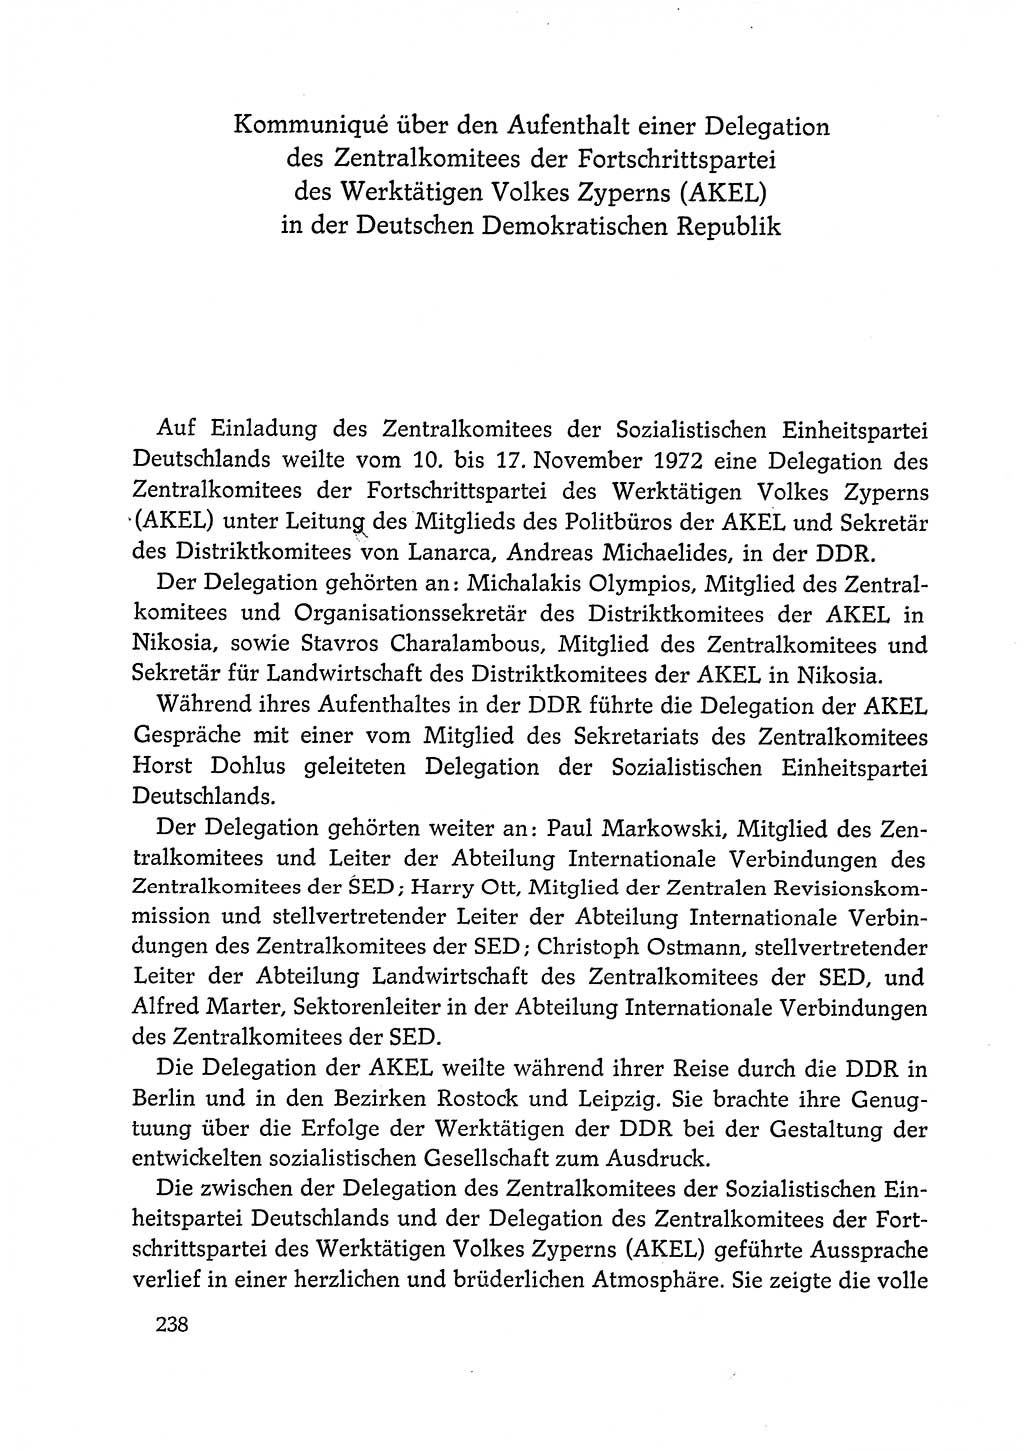 Dokumente der Sozialistischen Einheitspartei Deutschlands (SED) [Deutsche Demokratische Republik (DDR)] 1972-1973, Seite 238 (Dok. SED DDR 1972-1973, S. 238)